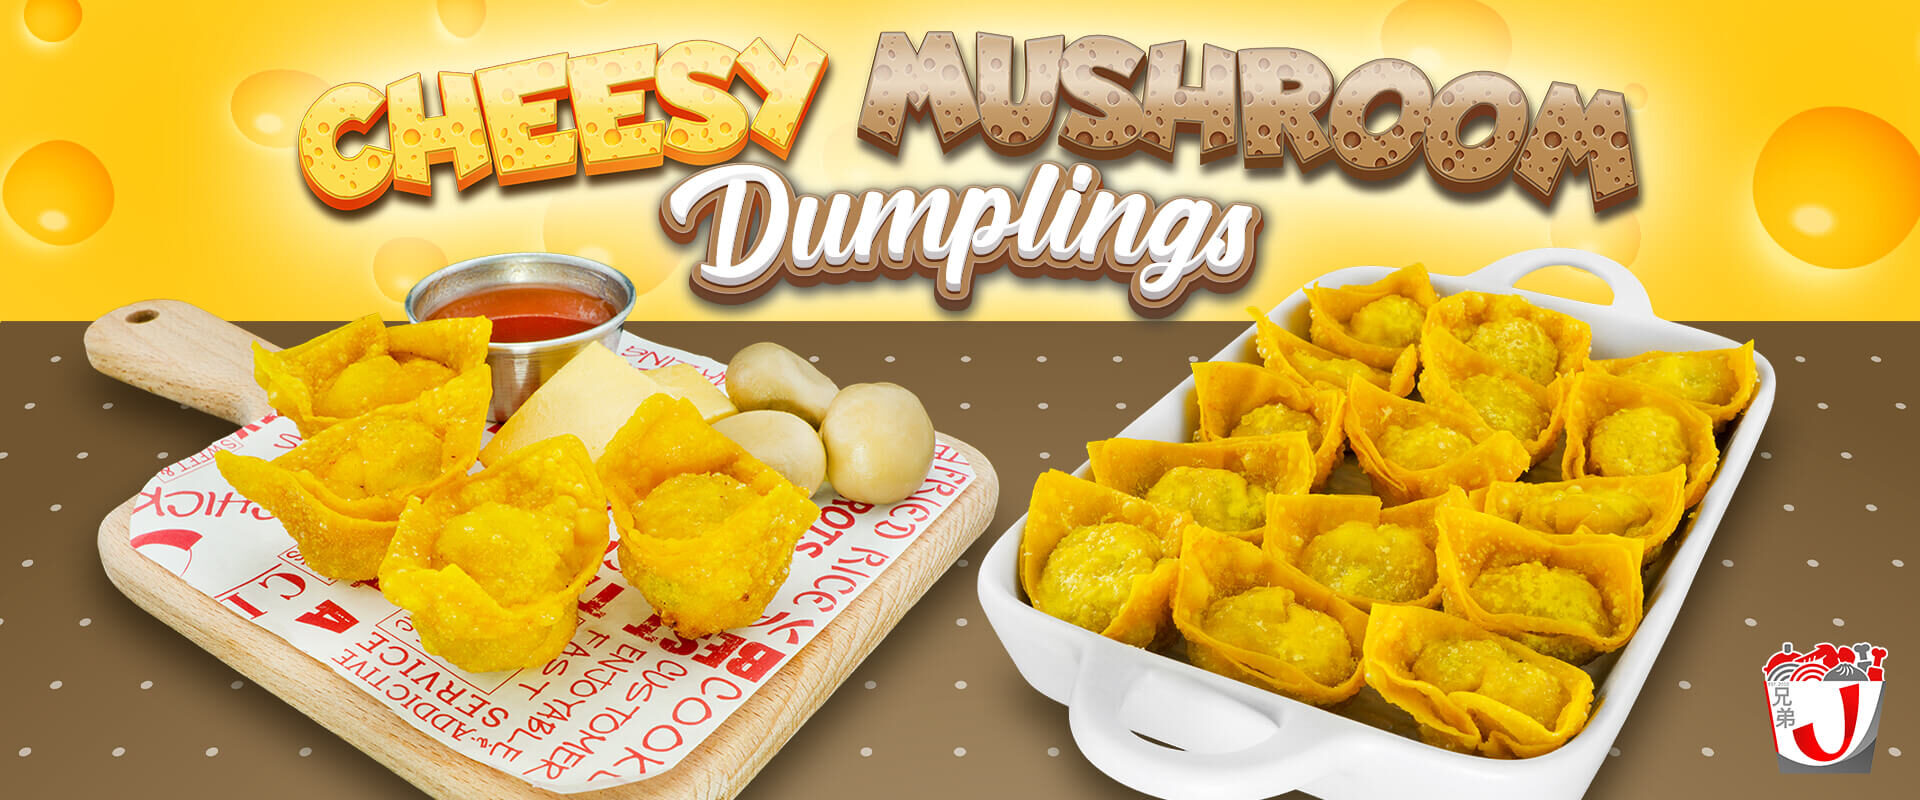 cheesy_mushroom_dumplings_1920x800px_122021_optimized